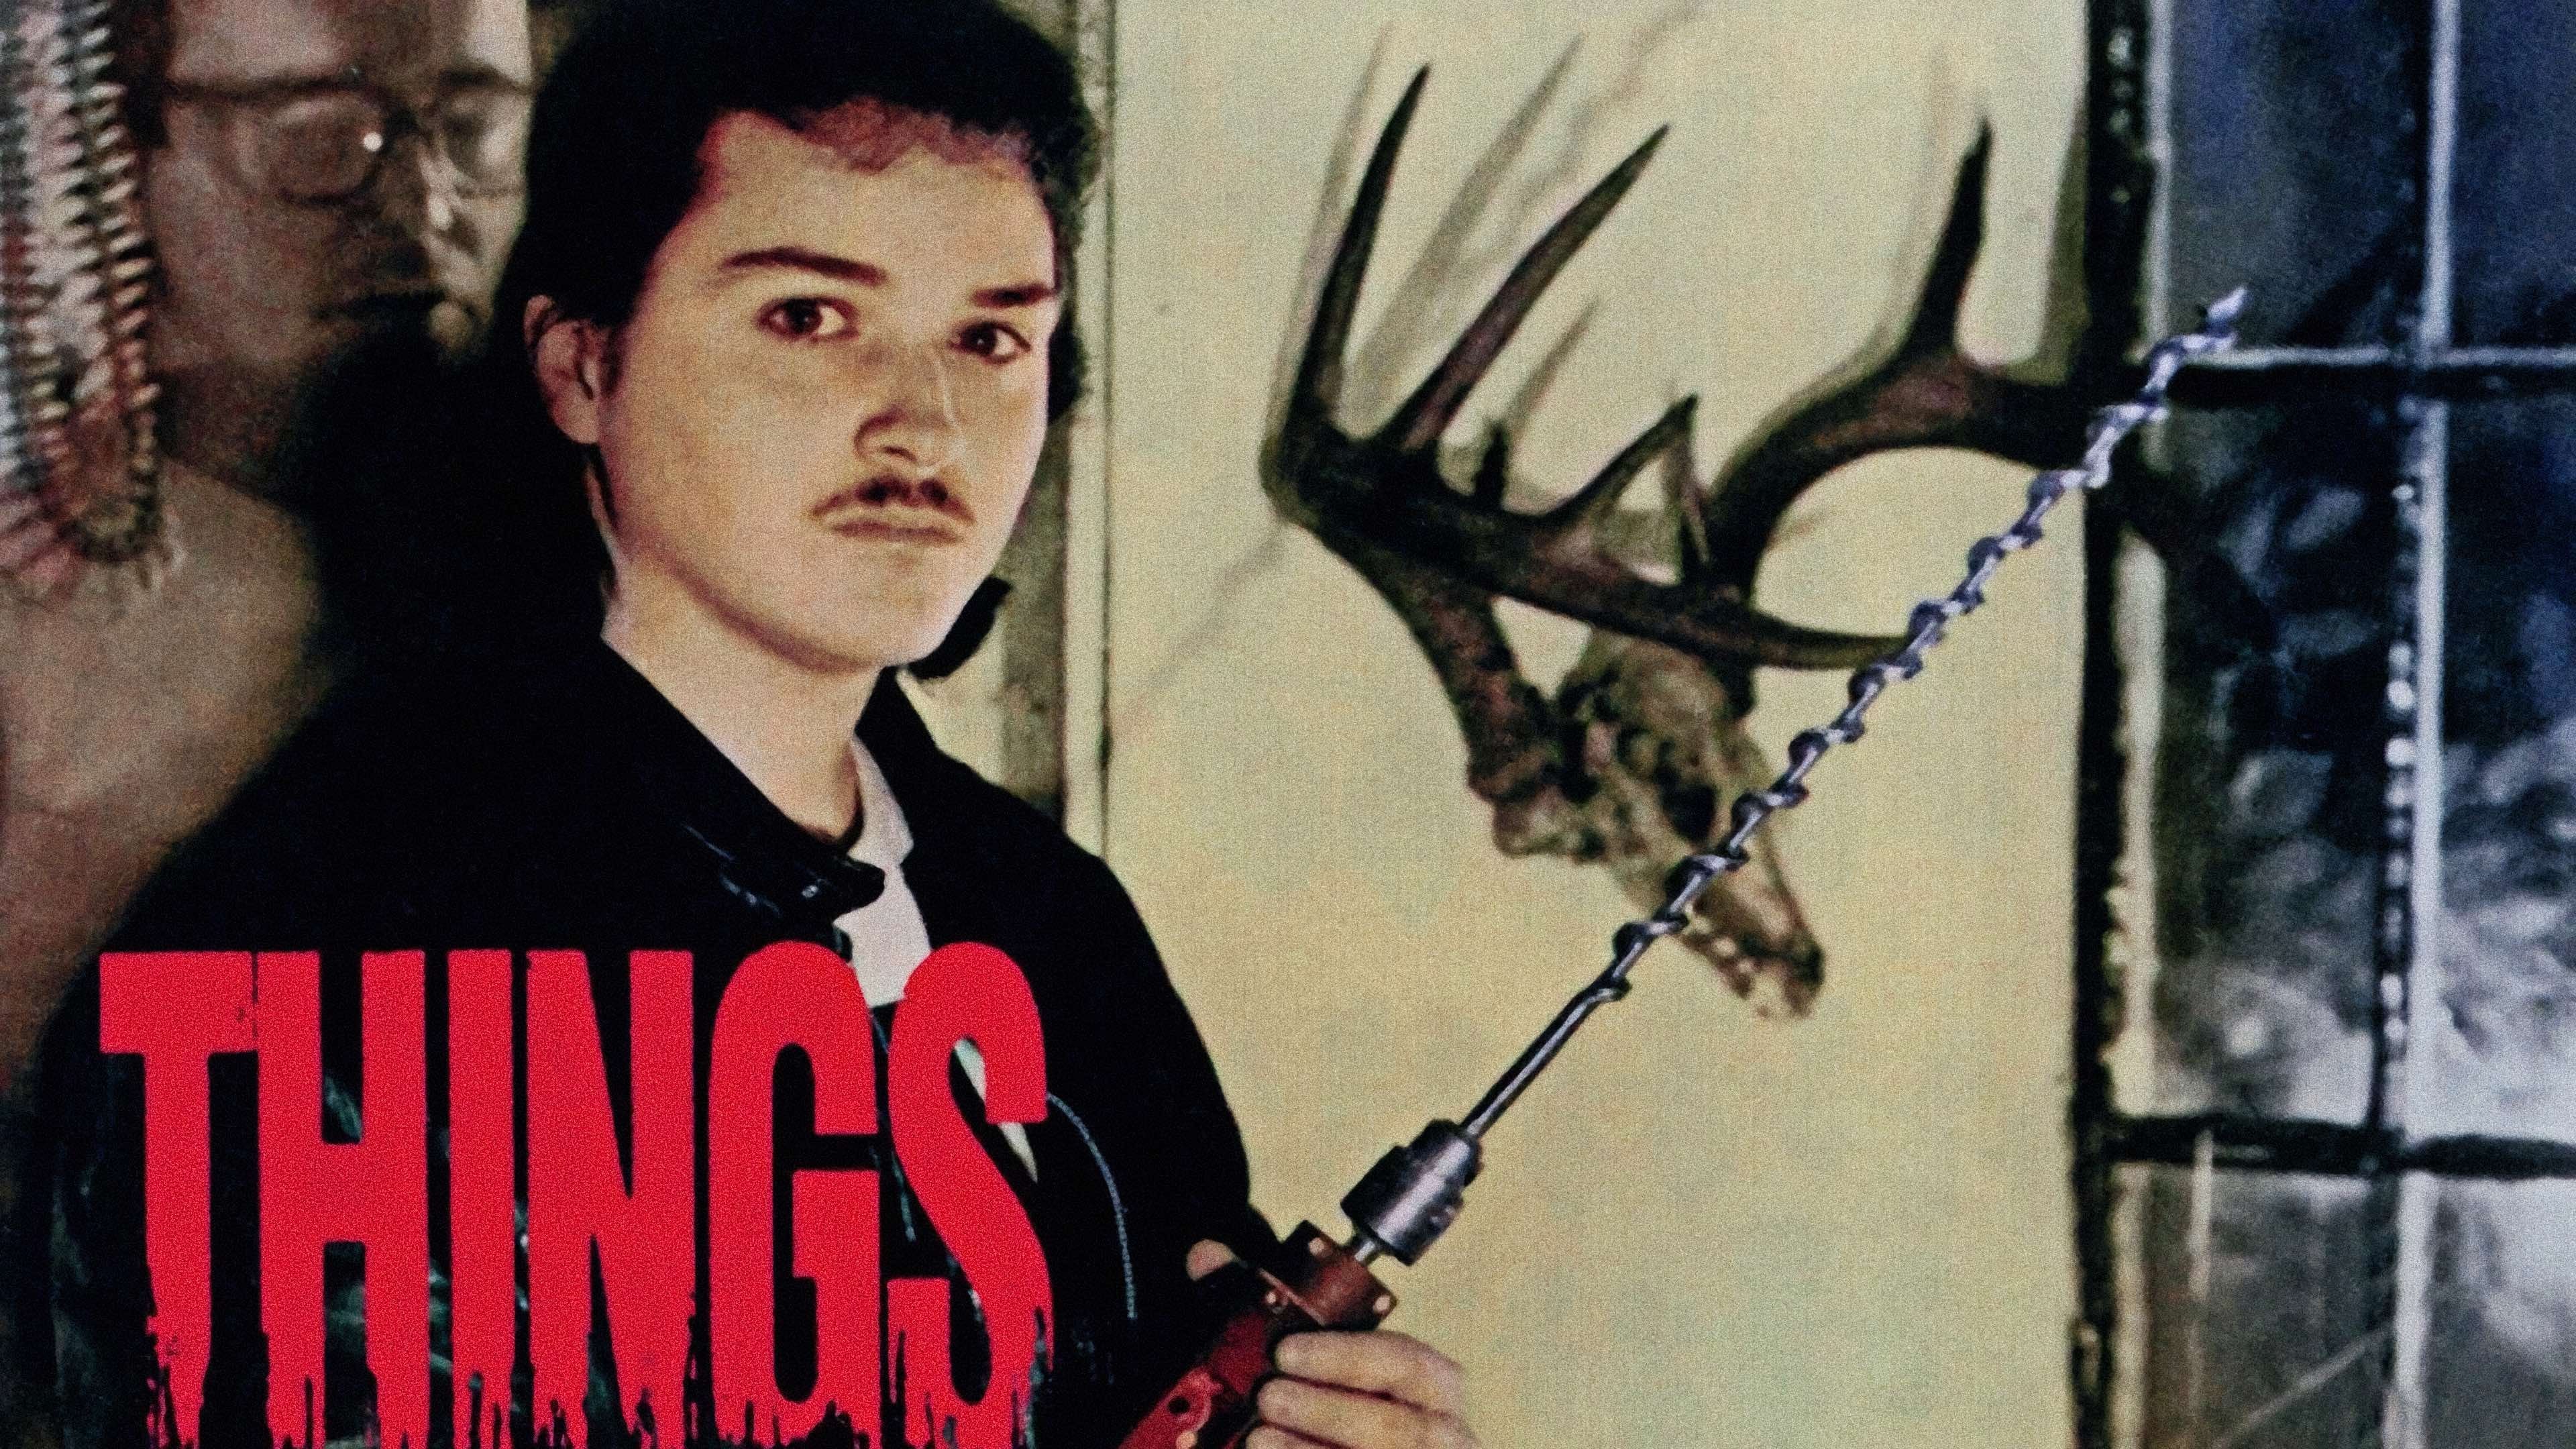 Things (1989)